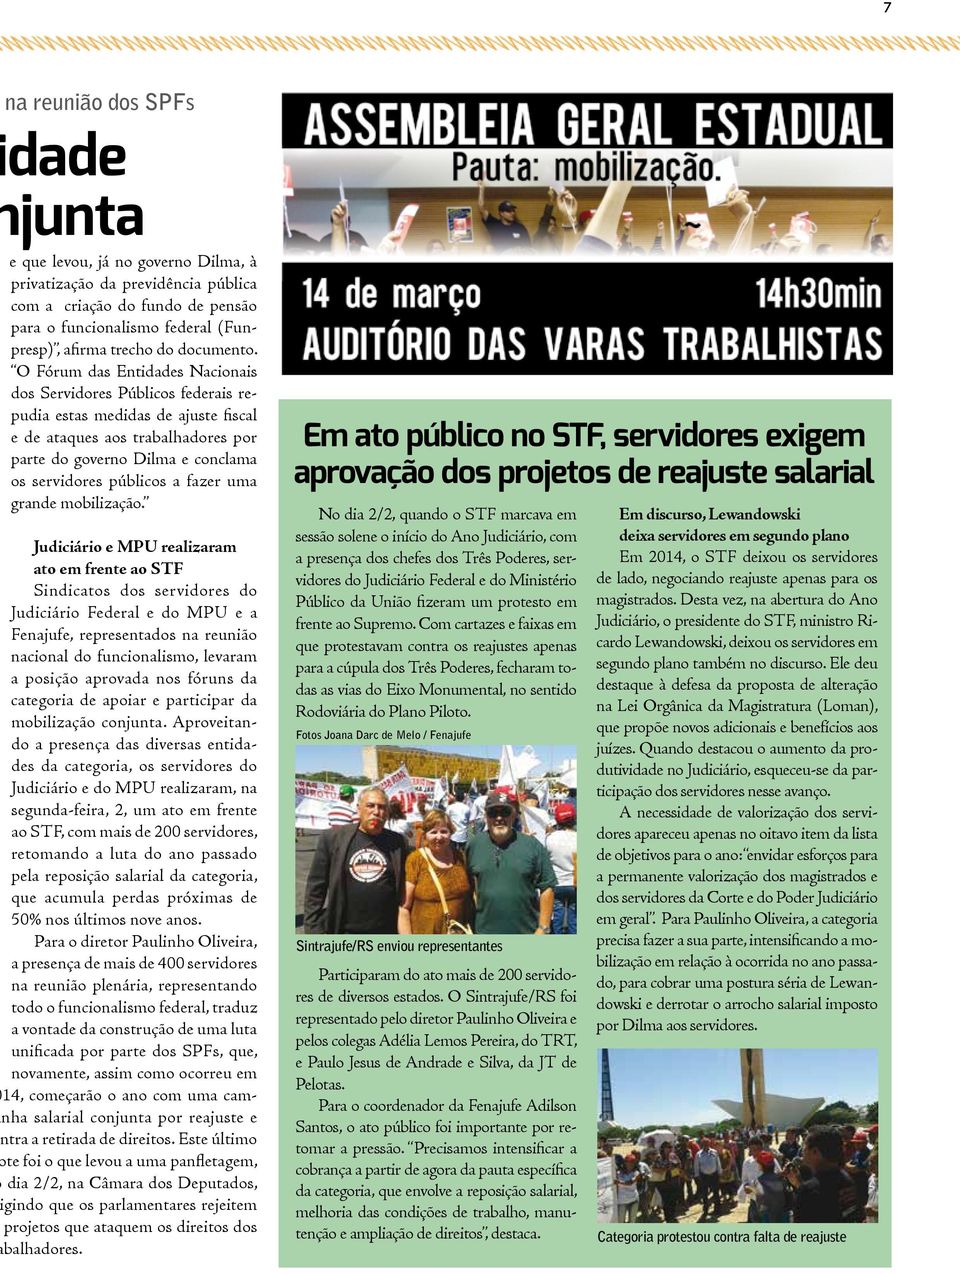 O Fórum das Entidades Nacionais dos Servidores Públicos federais repudia estas medidas de ajuste fiscal e de ataques aos trabalhadores por parte do governo Dilma e conclama os servidores públicos a